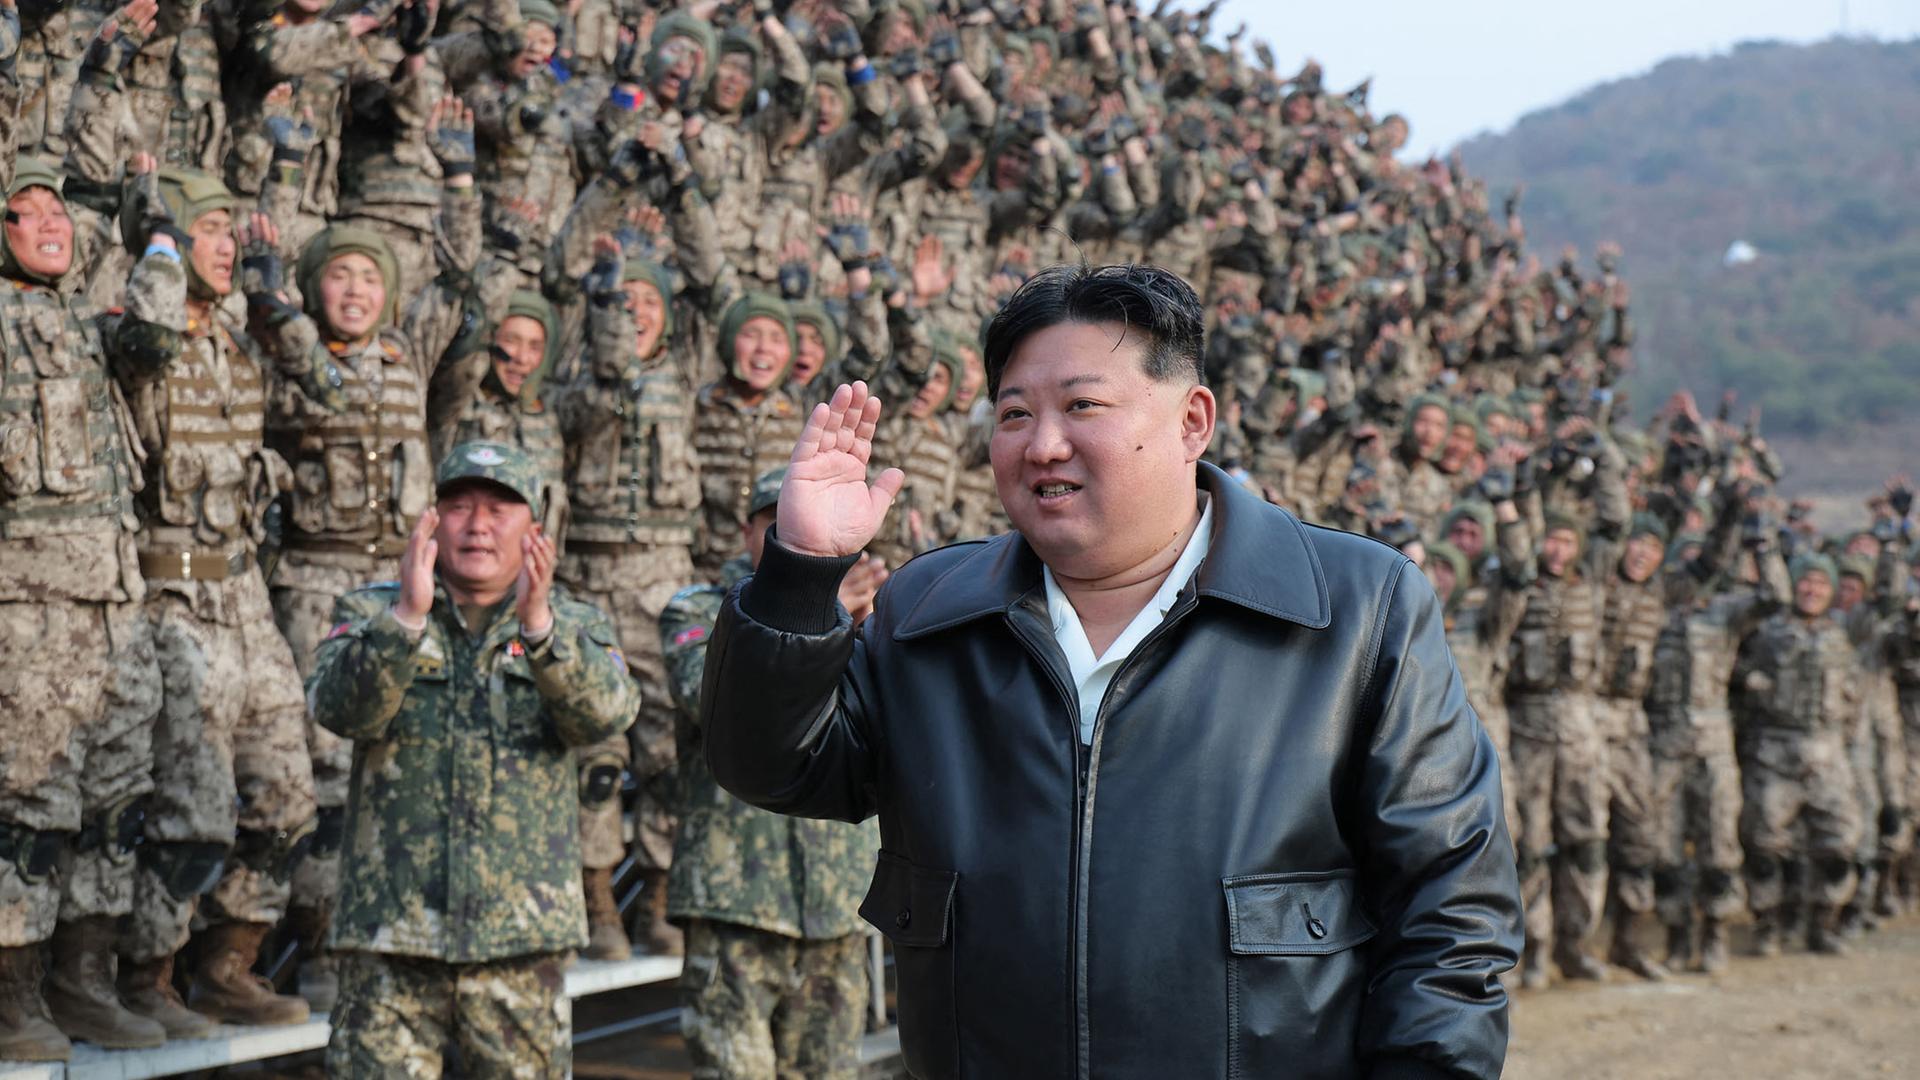 Kim Jong Un geht grüßend an Soldaten vorbei. Die Soldaten winken und klatschen.